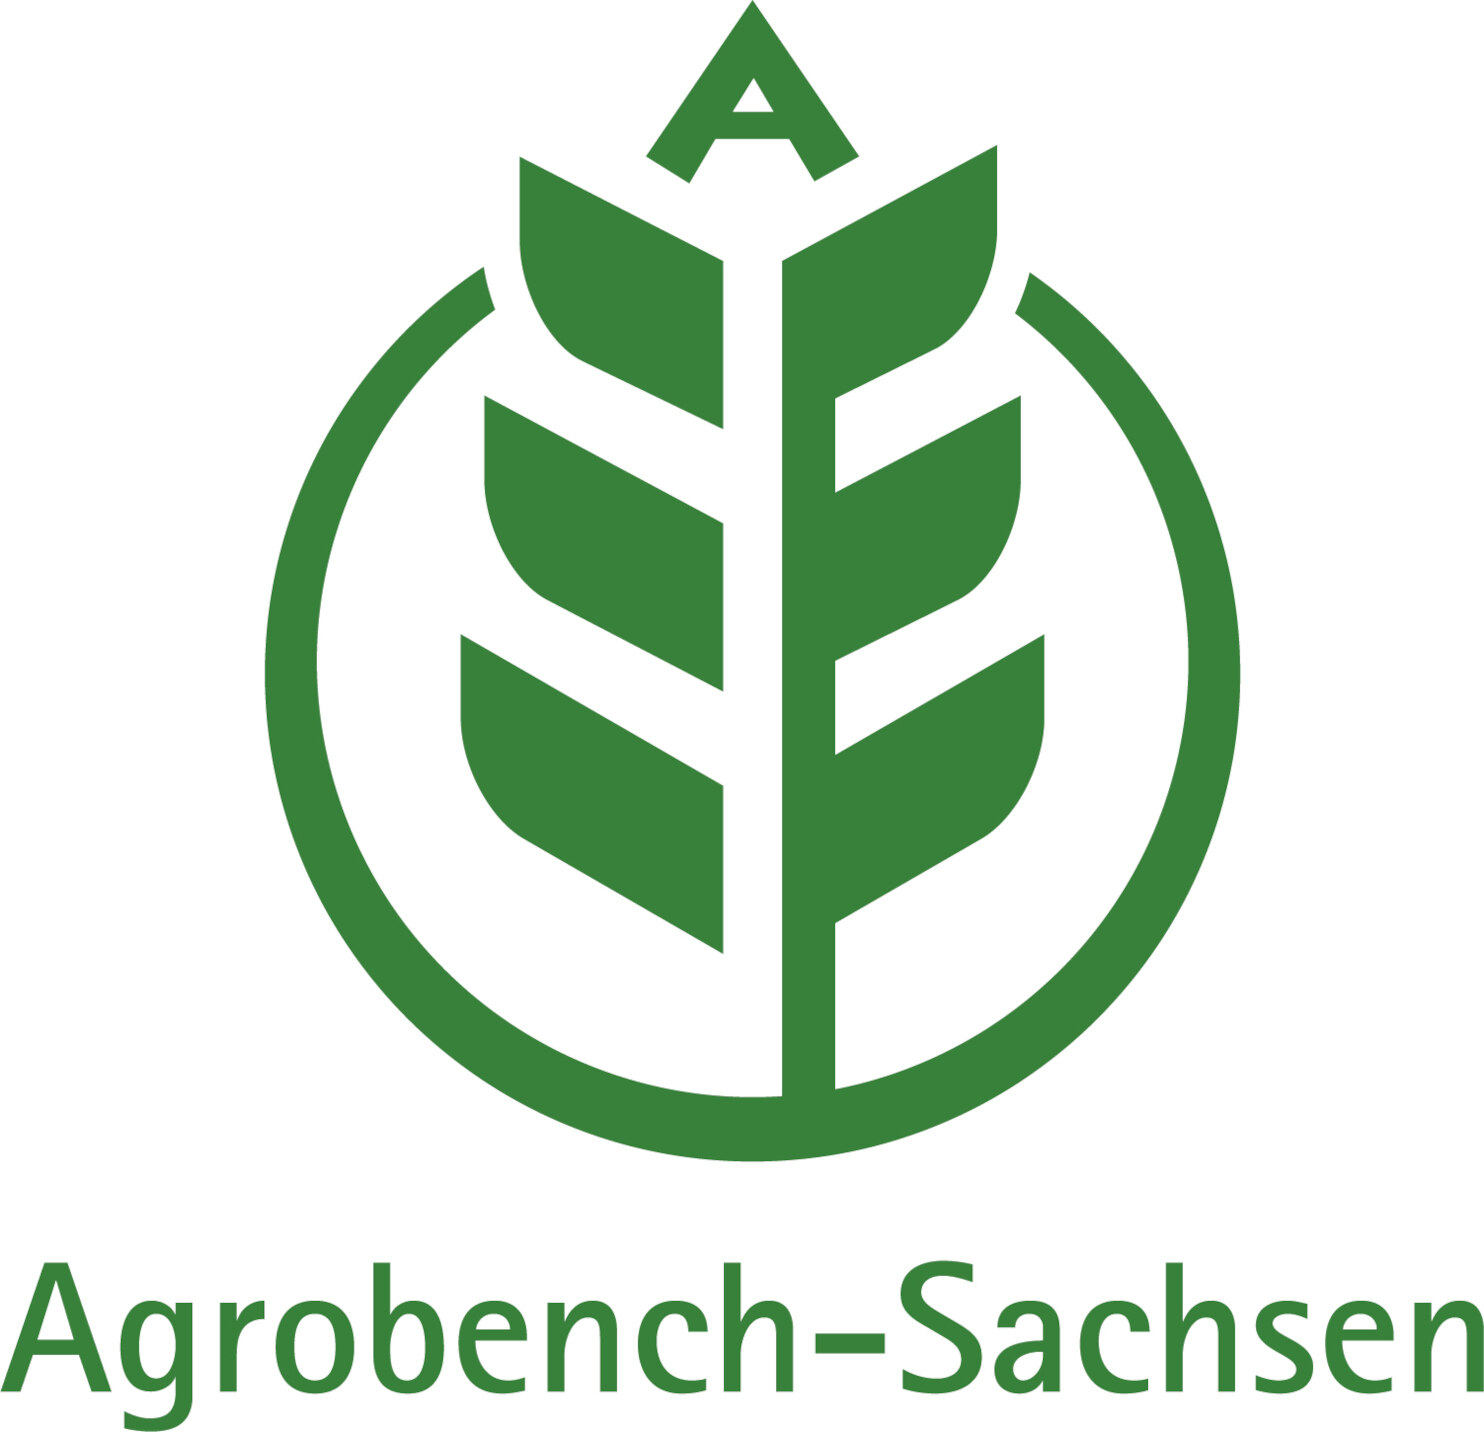 Das Logo für Agrobench ist eine Getreideähre, oben mit dem Buchstaben A und von einem Kreis umgeben, grün auf weißem Grund